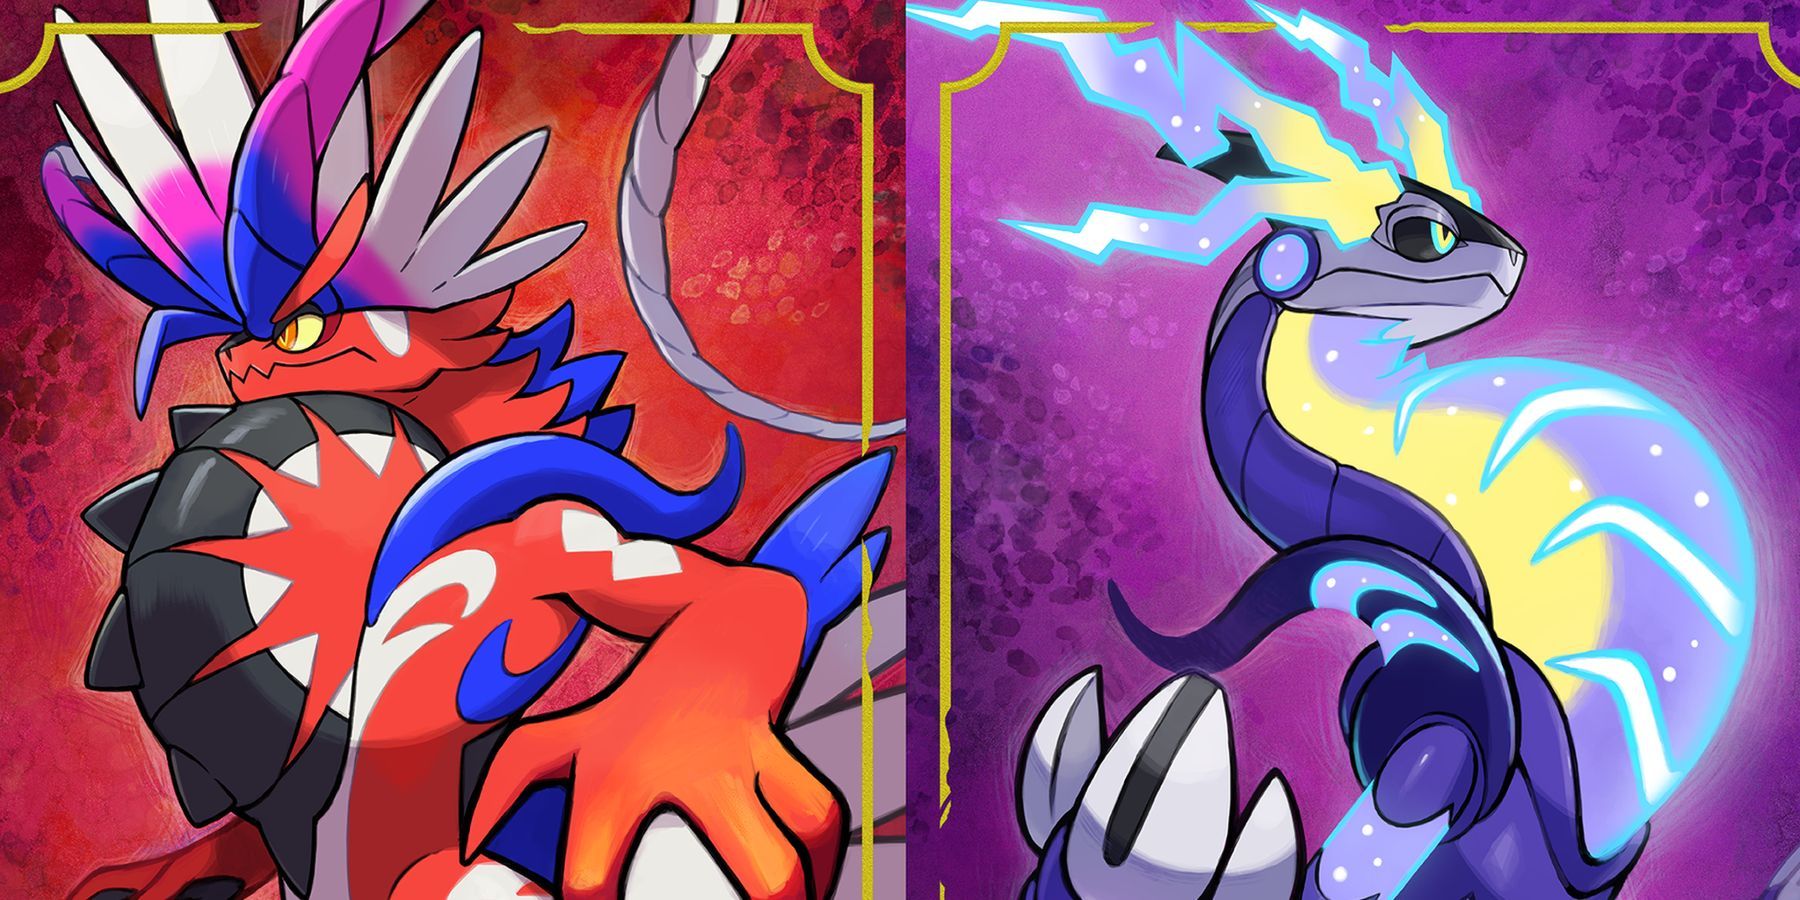 Scarlet & Violet Leaks Show New Ancient/Future Pokémon Forms